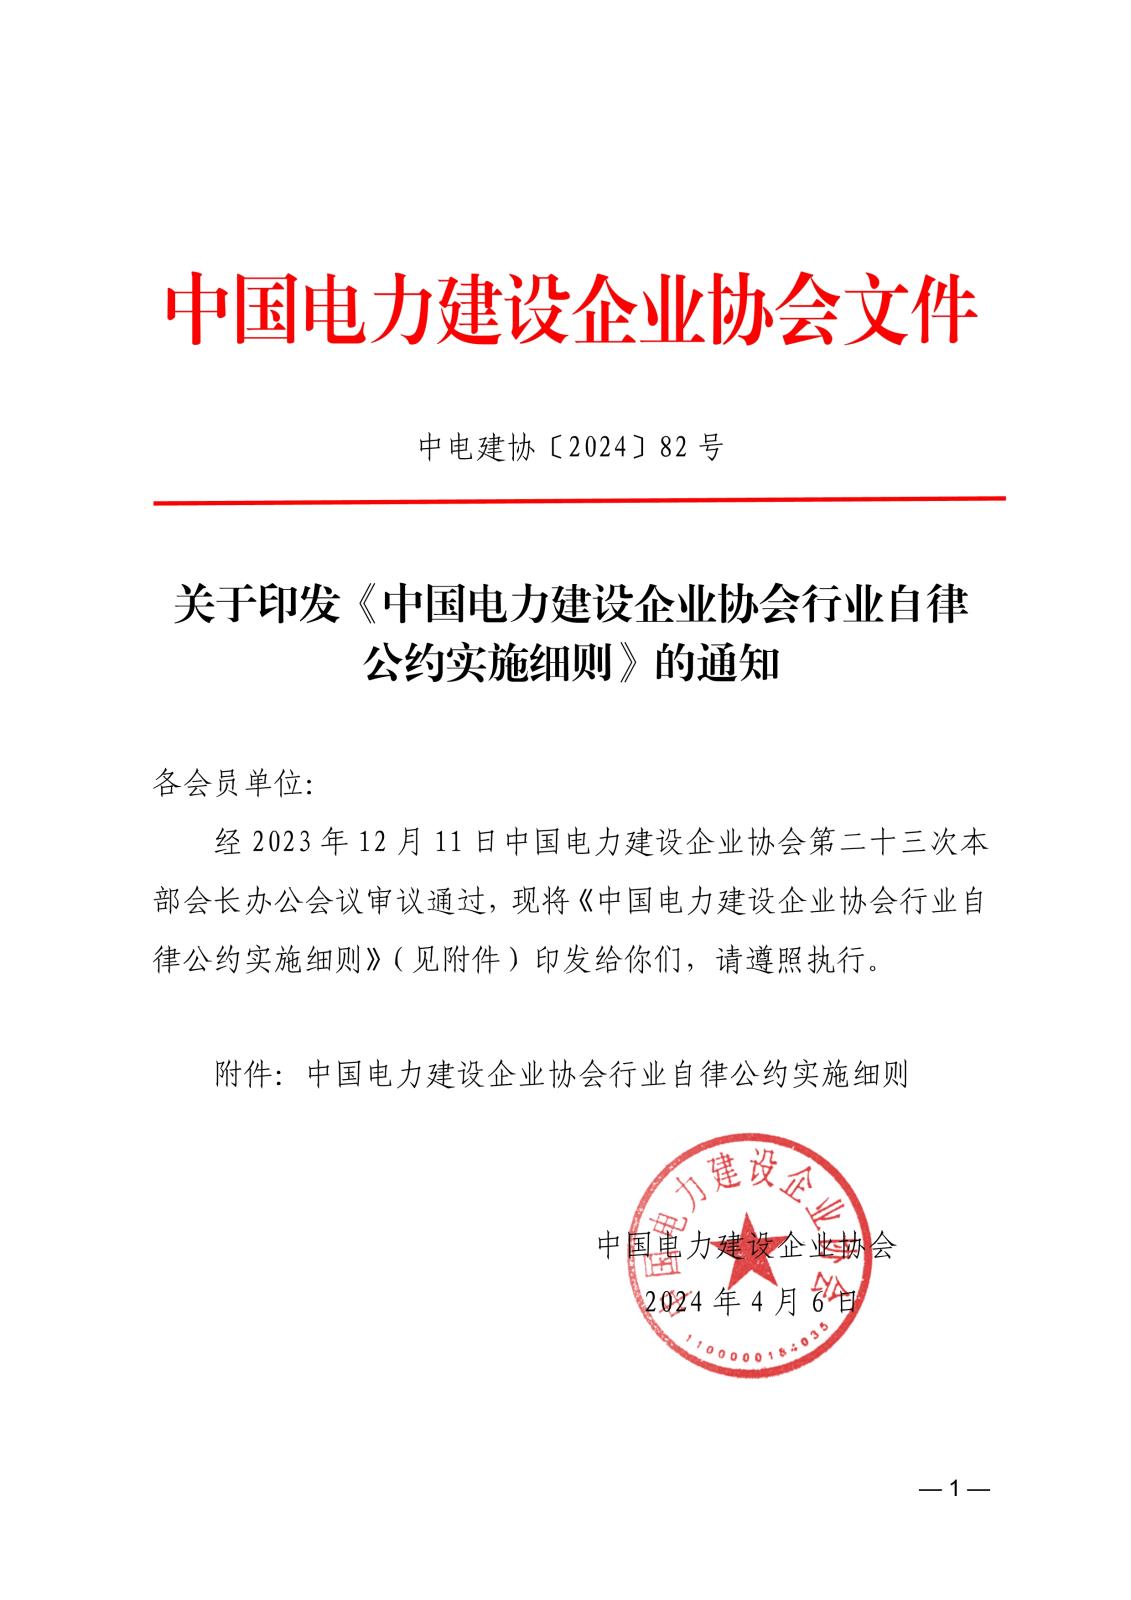 关于印发《中国电力建设企业协会行业自律公约实施细则》的通知_1.jpg